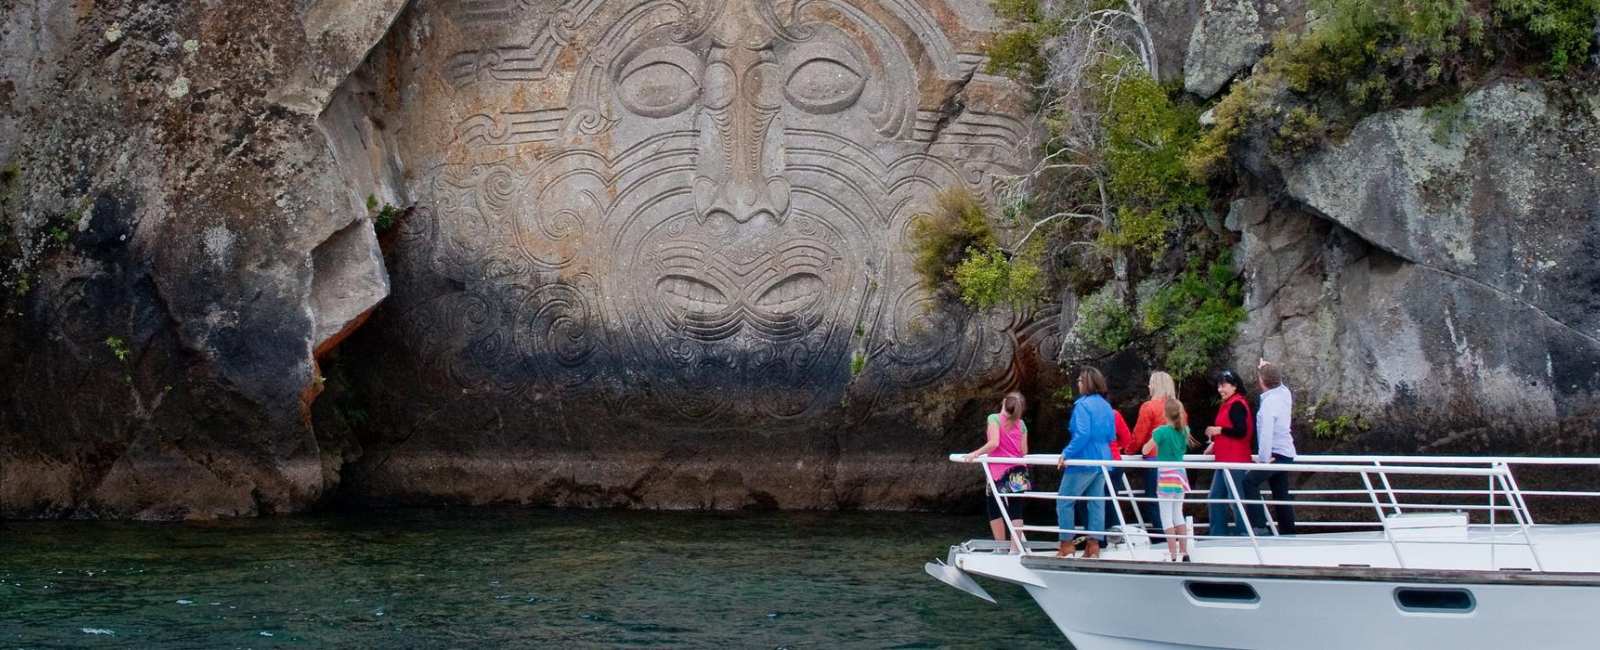 Maori carving along Lake Taupo